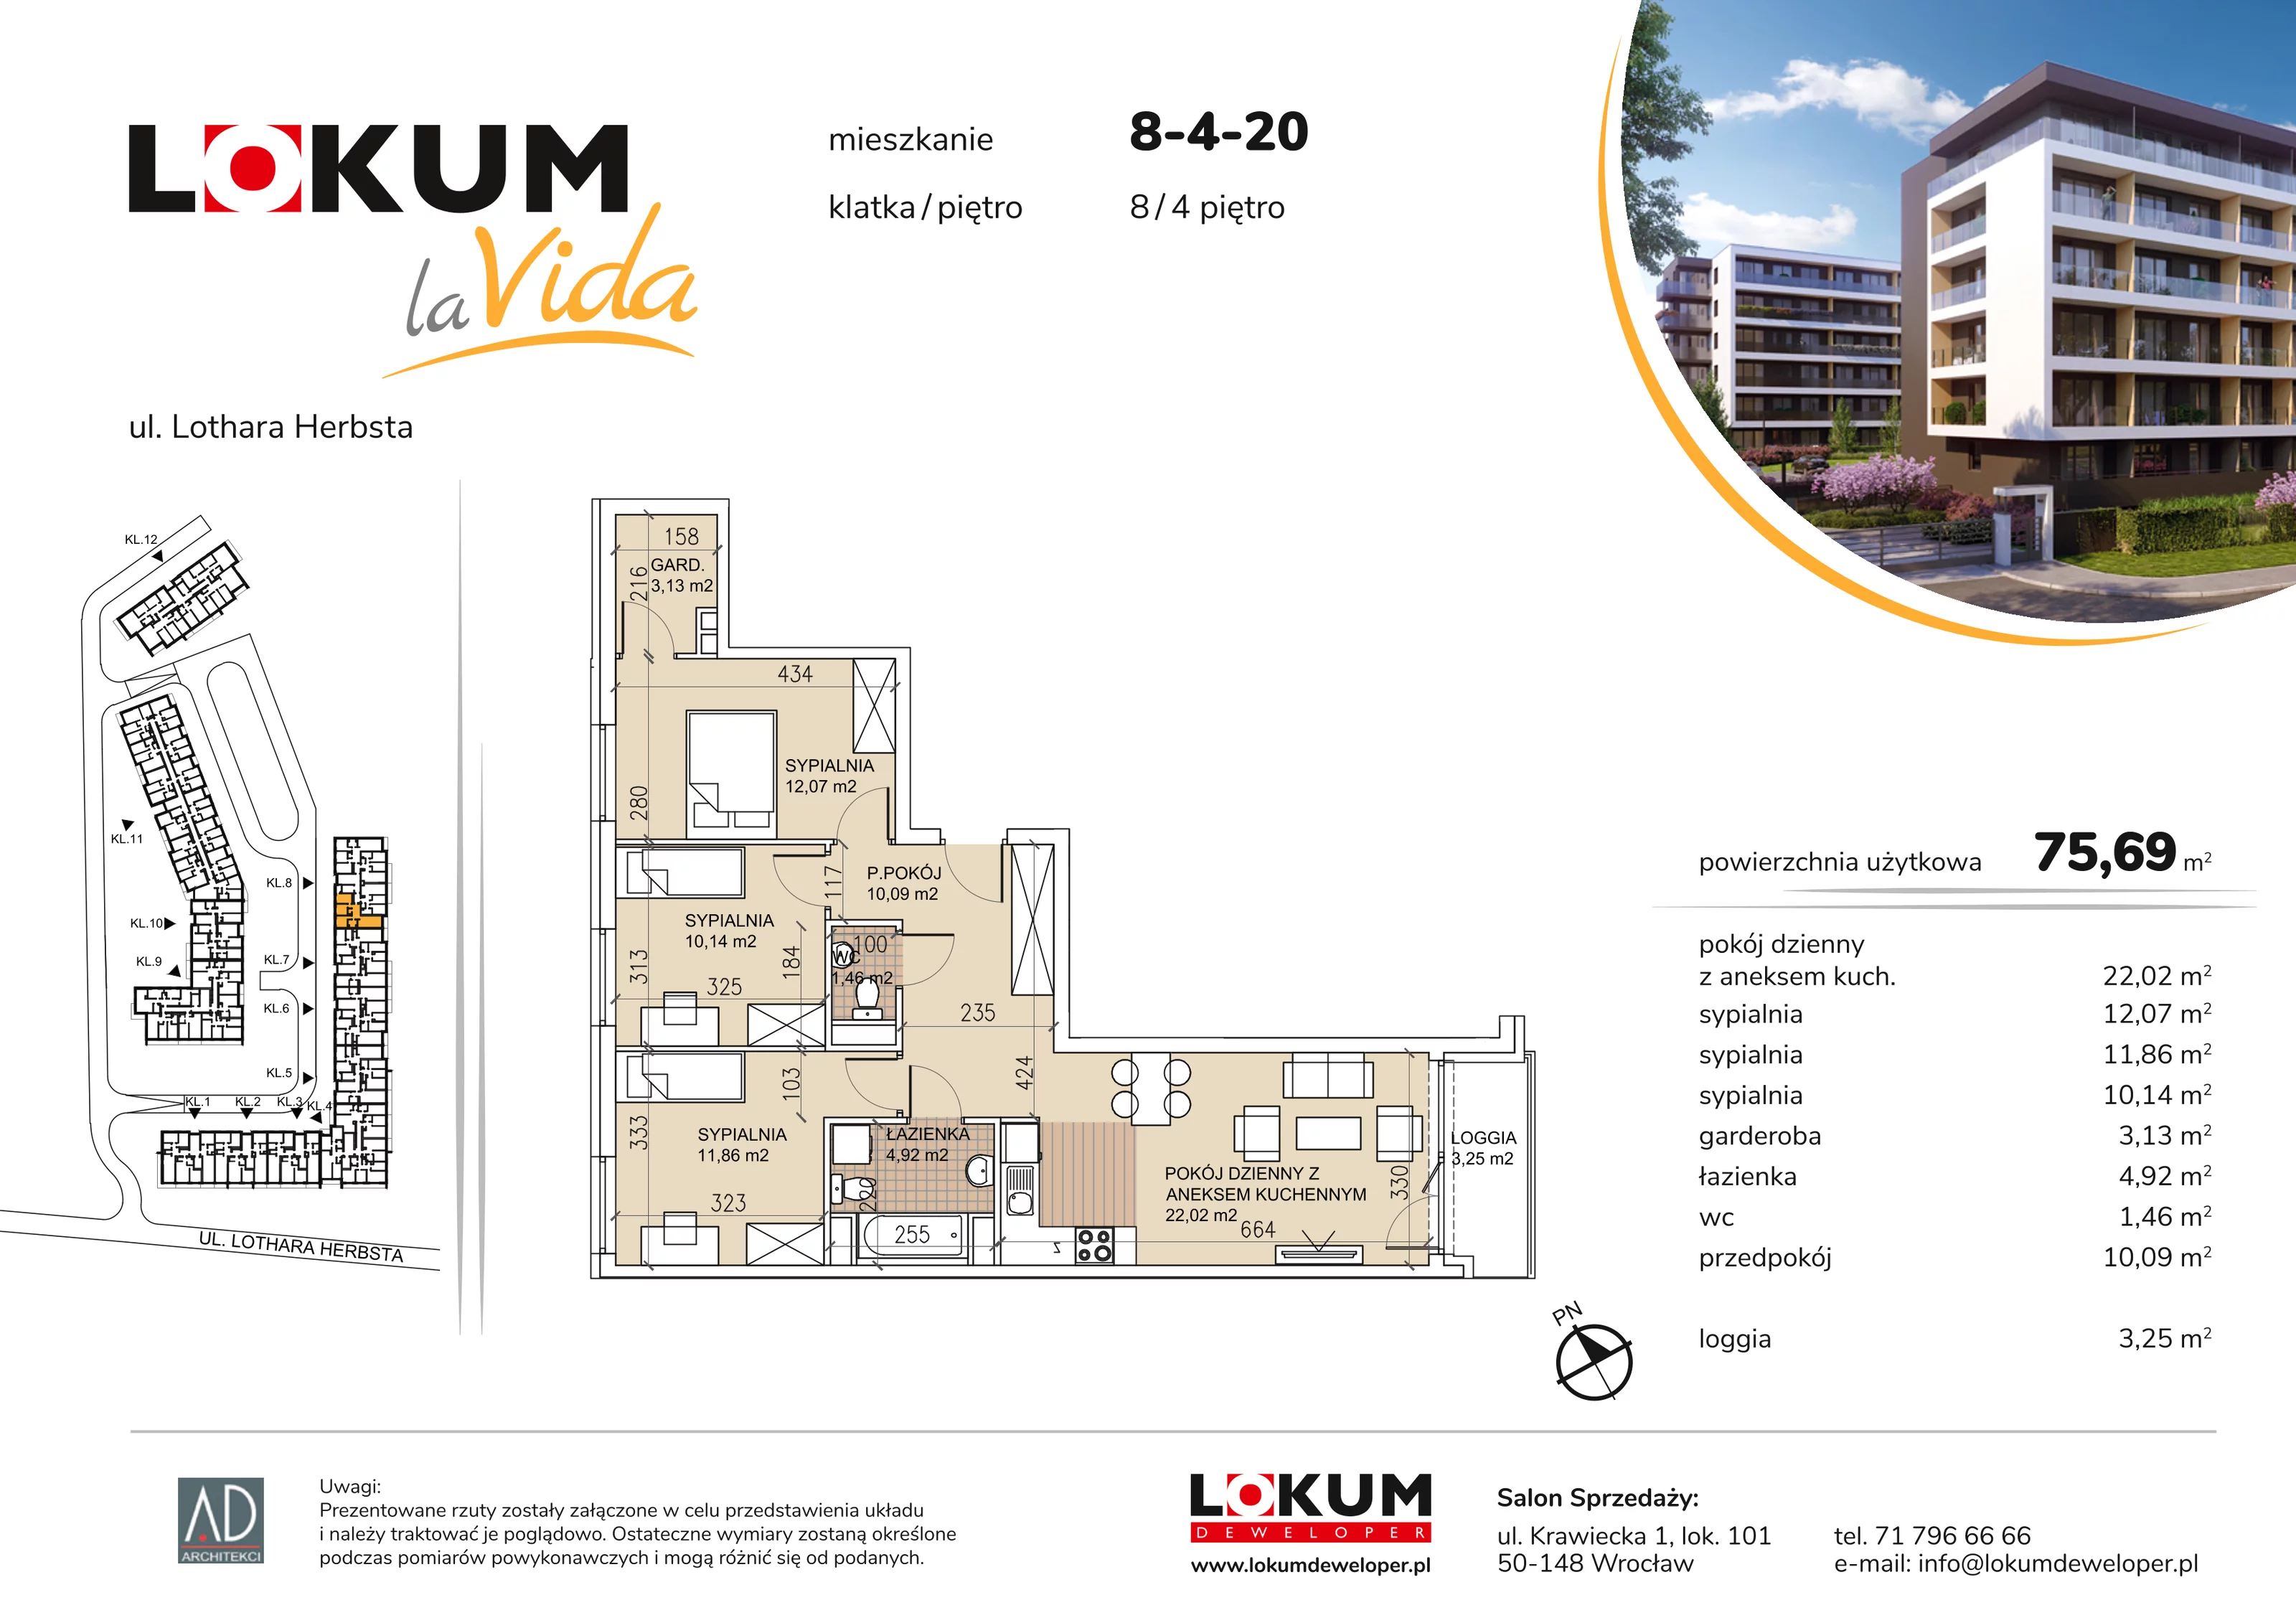 Mieszkanie 75,69 m², piętro 4, oferta nr 8-4-20, Lokum la Vida, Wrocław, Sołtysowice, ul. Lothara Herbsta